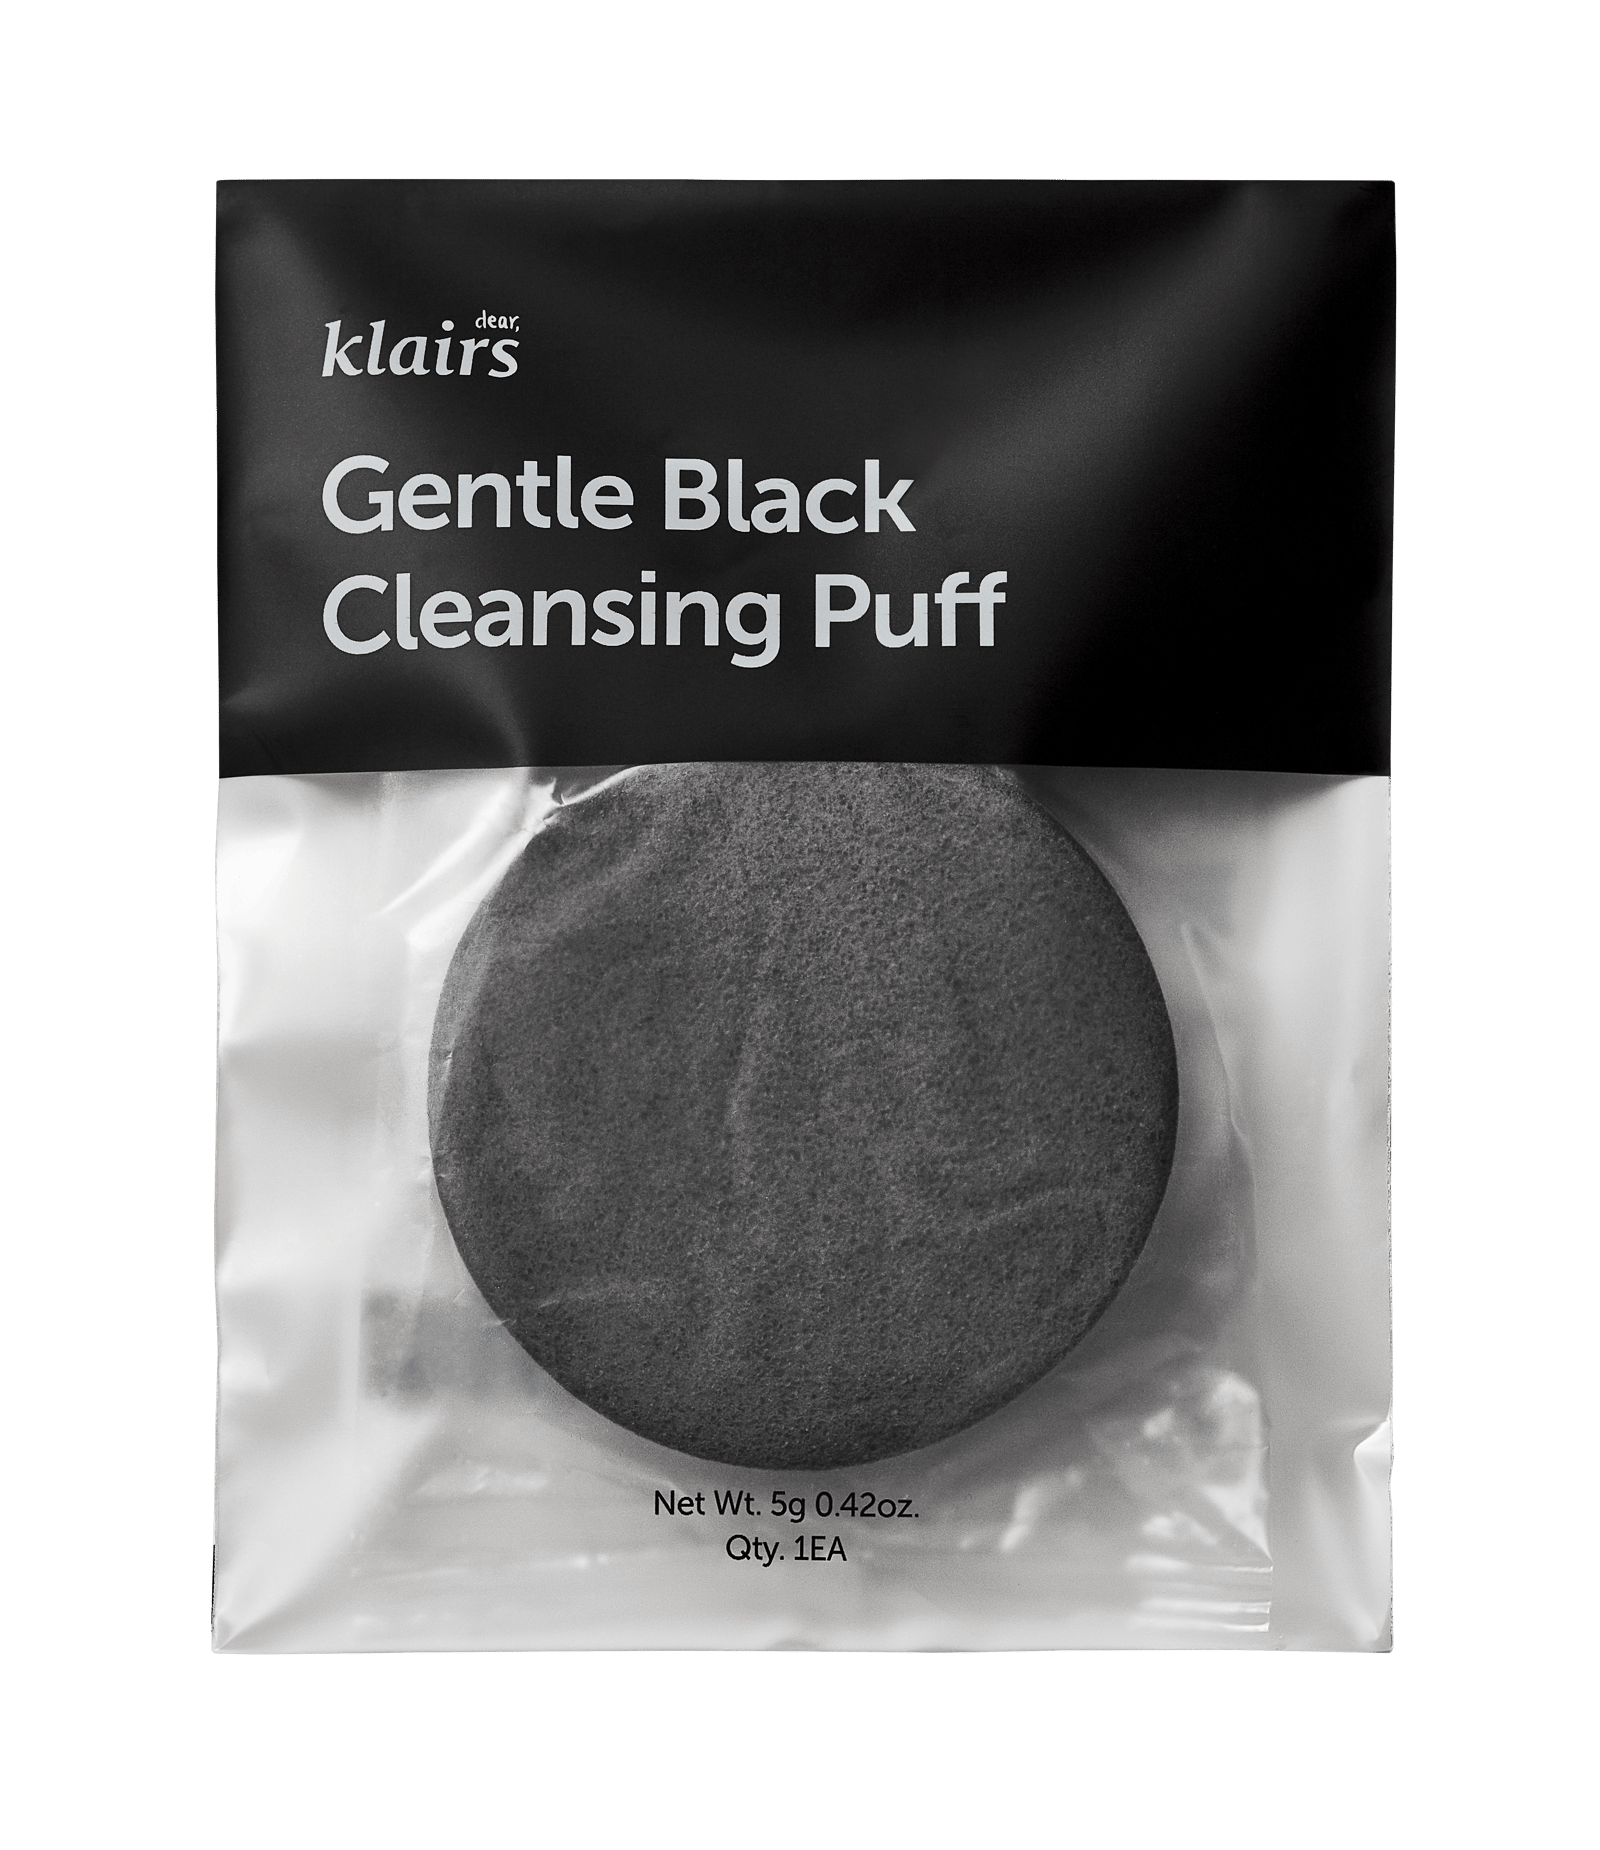 Klairs Gentle Black Cleansing Puff 1 st